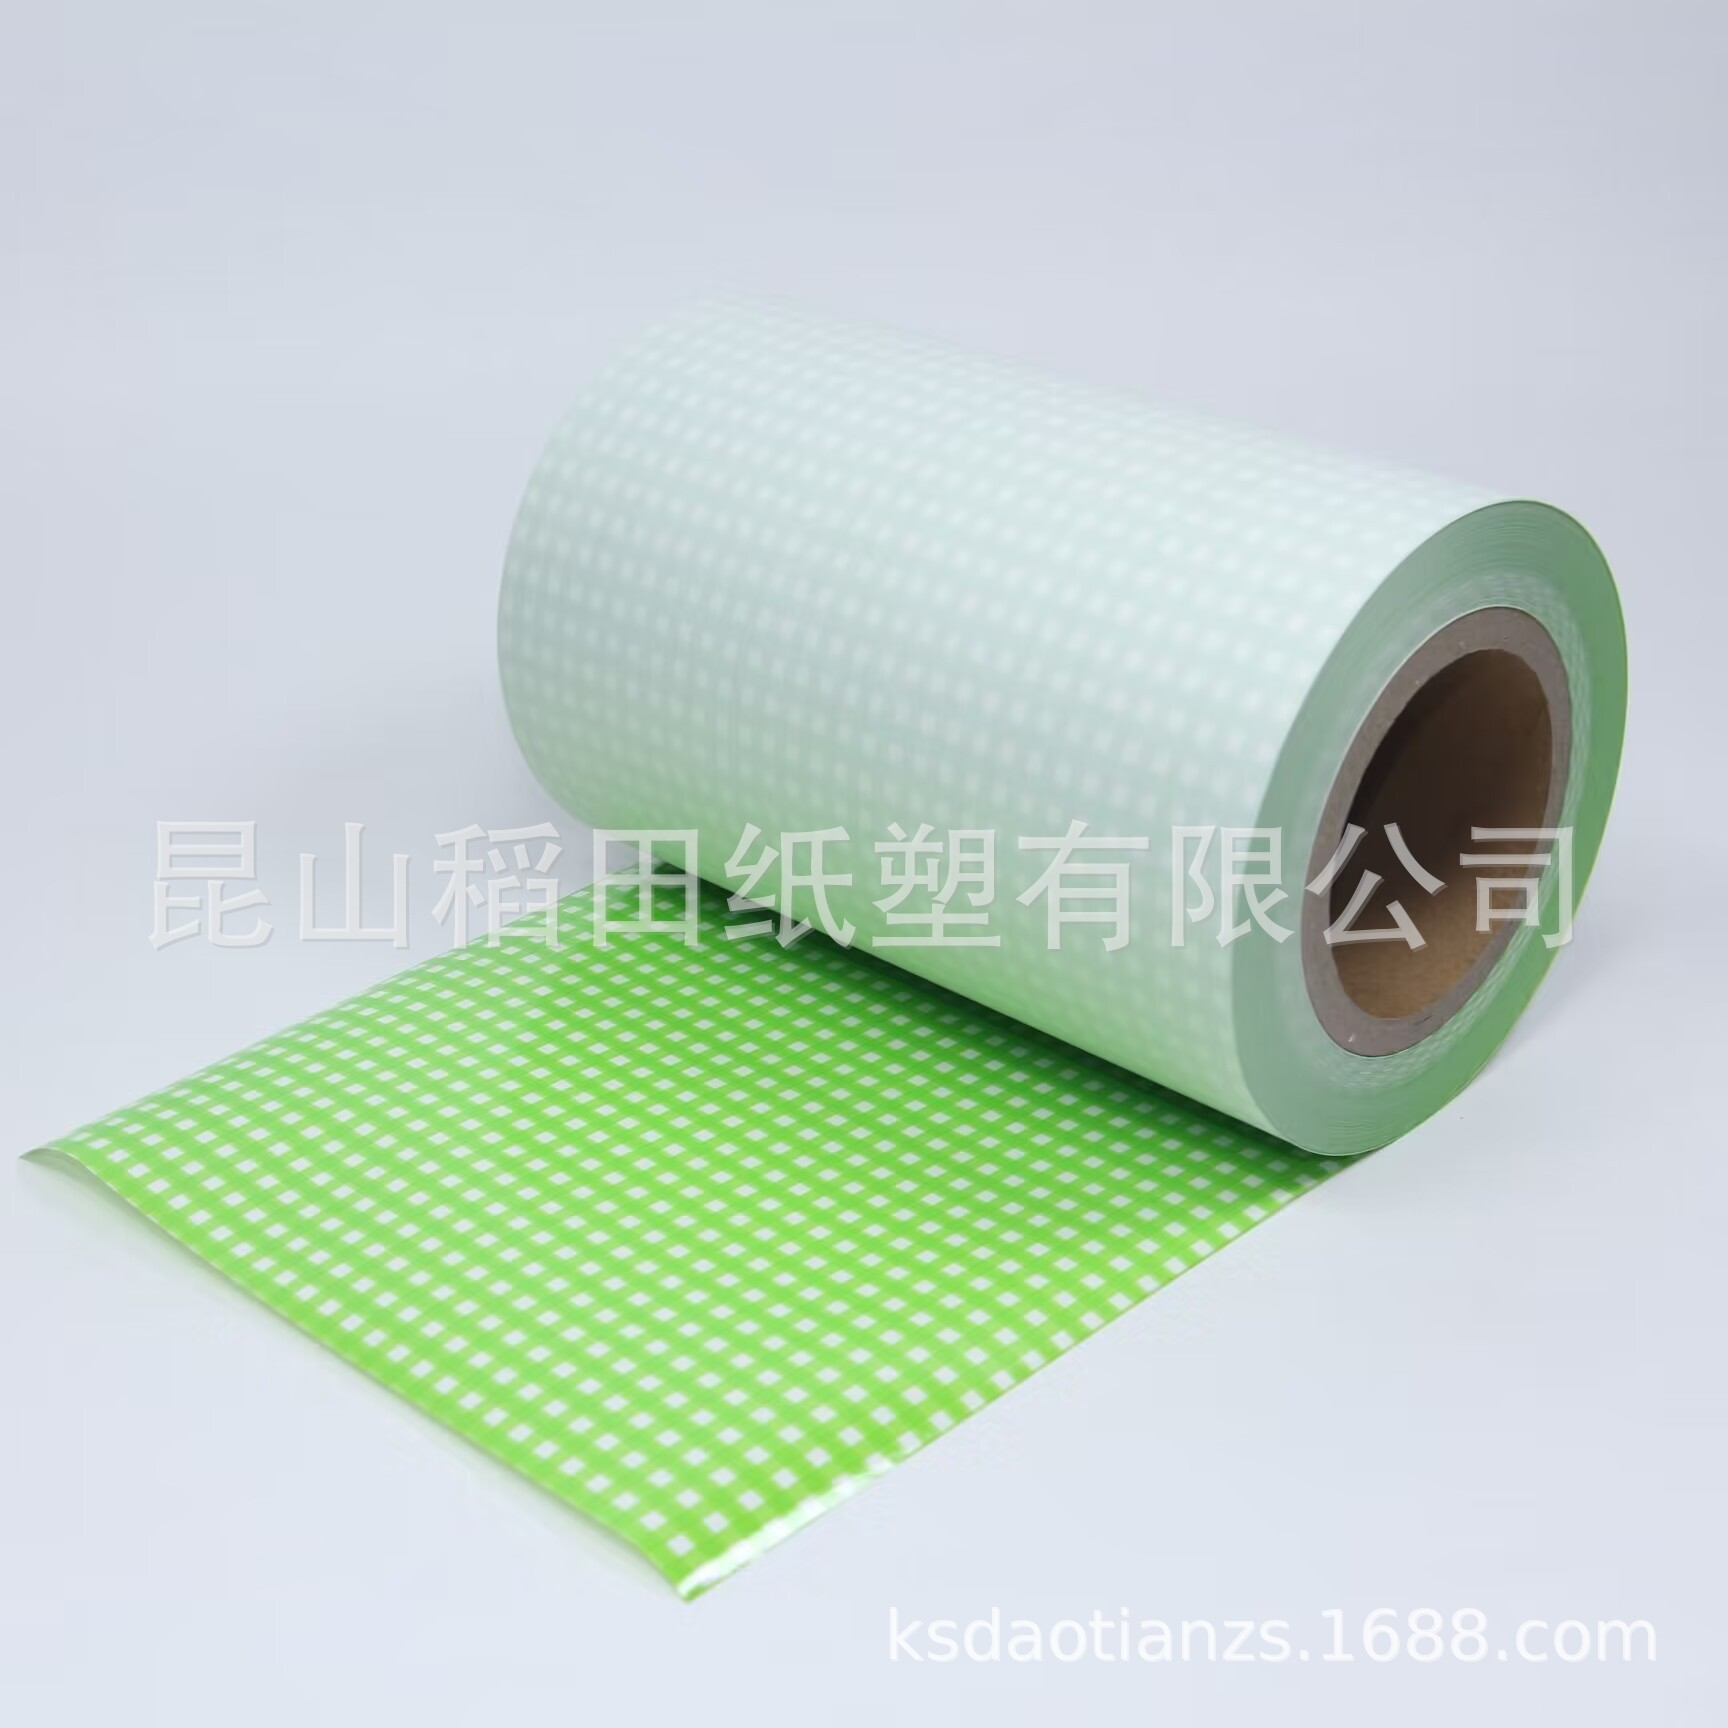 厂家直销 各类纸制品纸淋膜加工 可按要求生产 防水隔潮